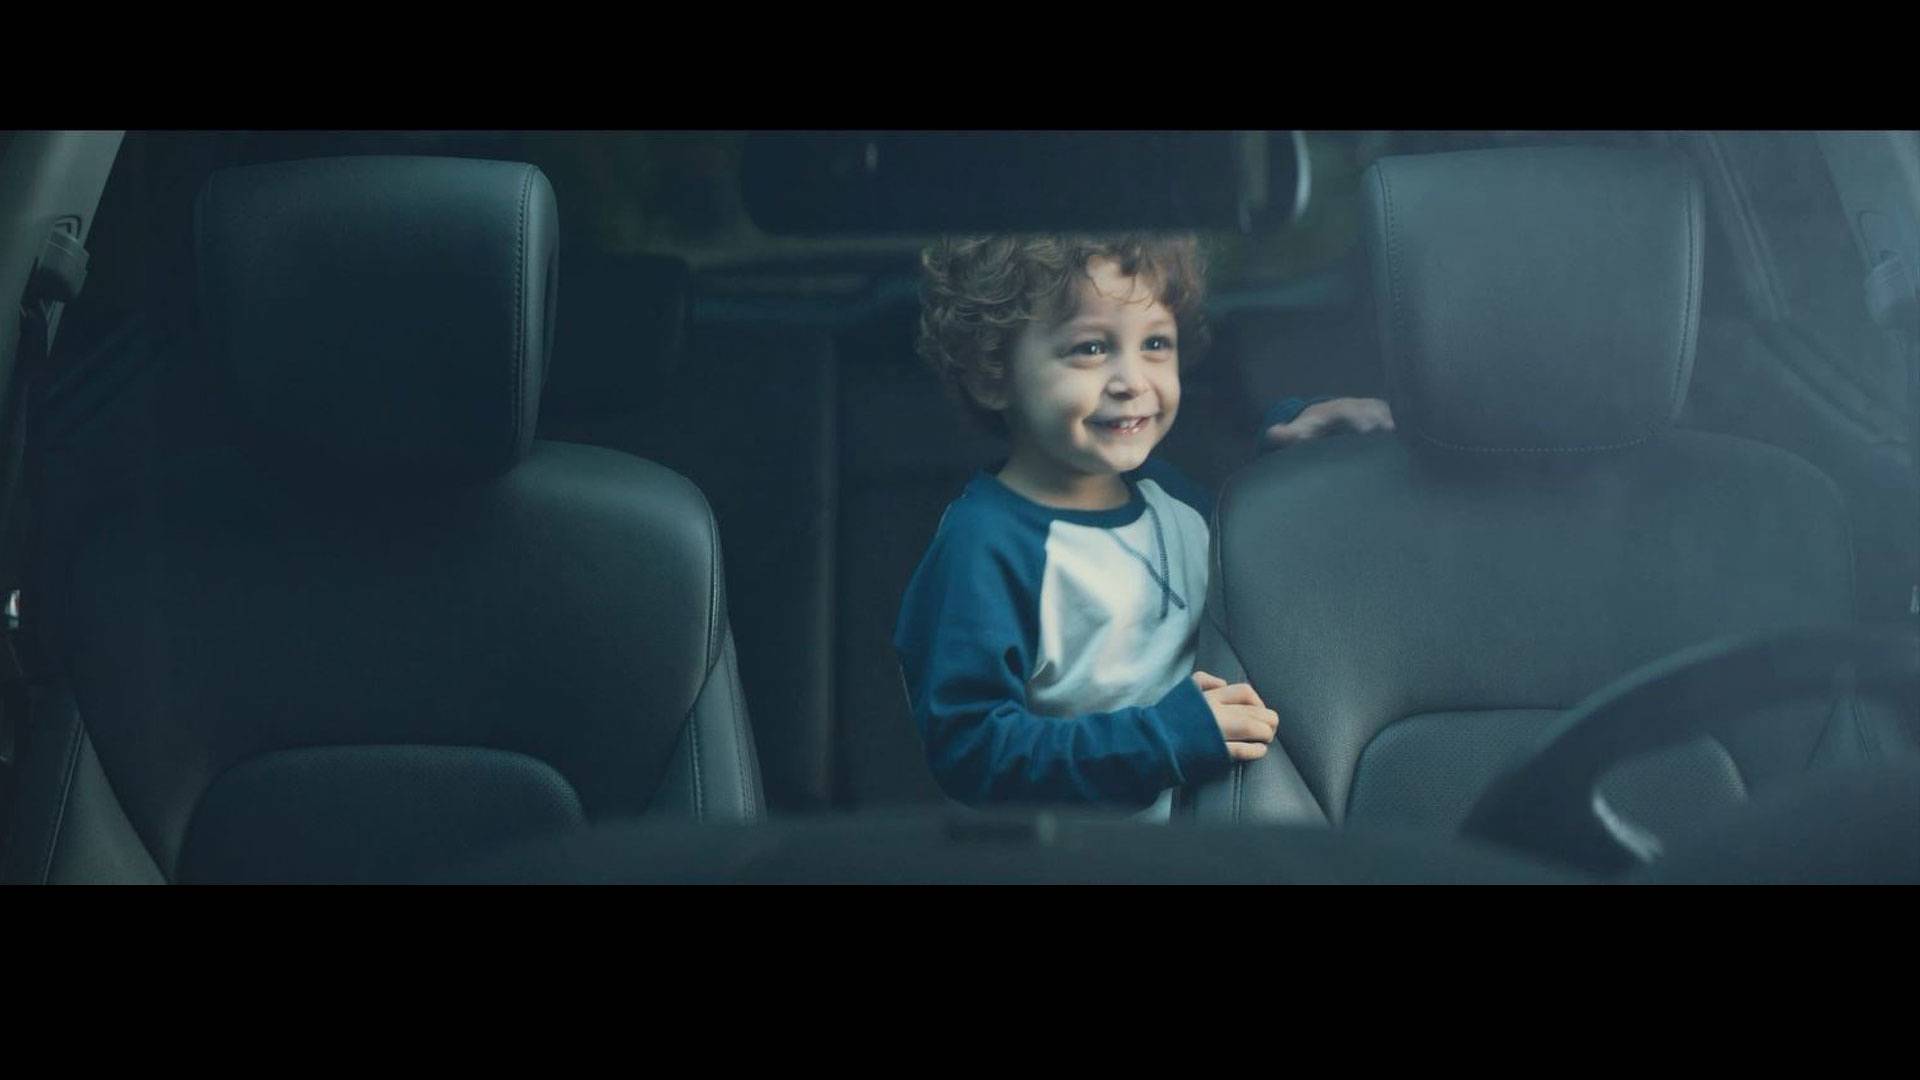 Hyundai Child Safety